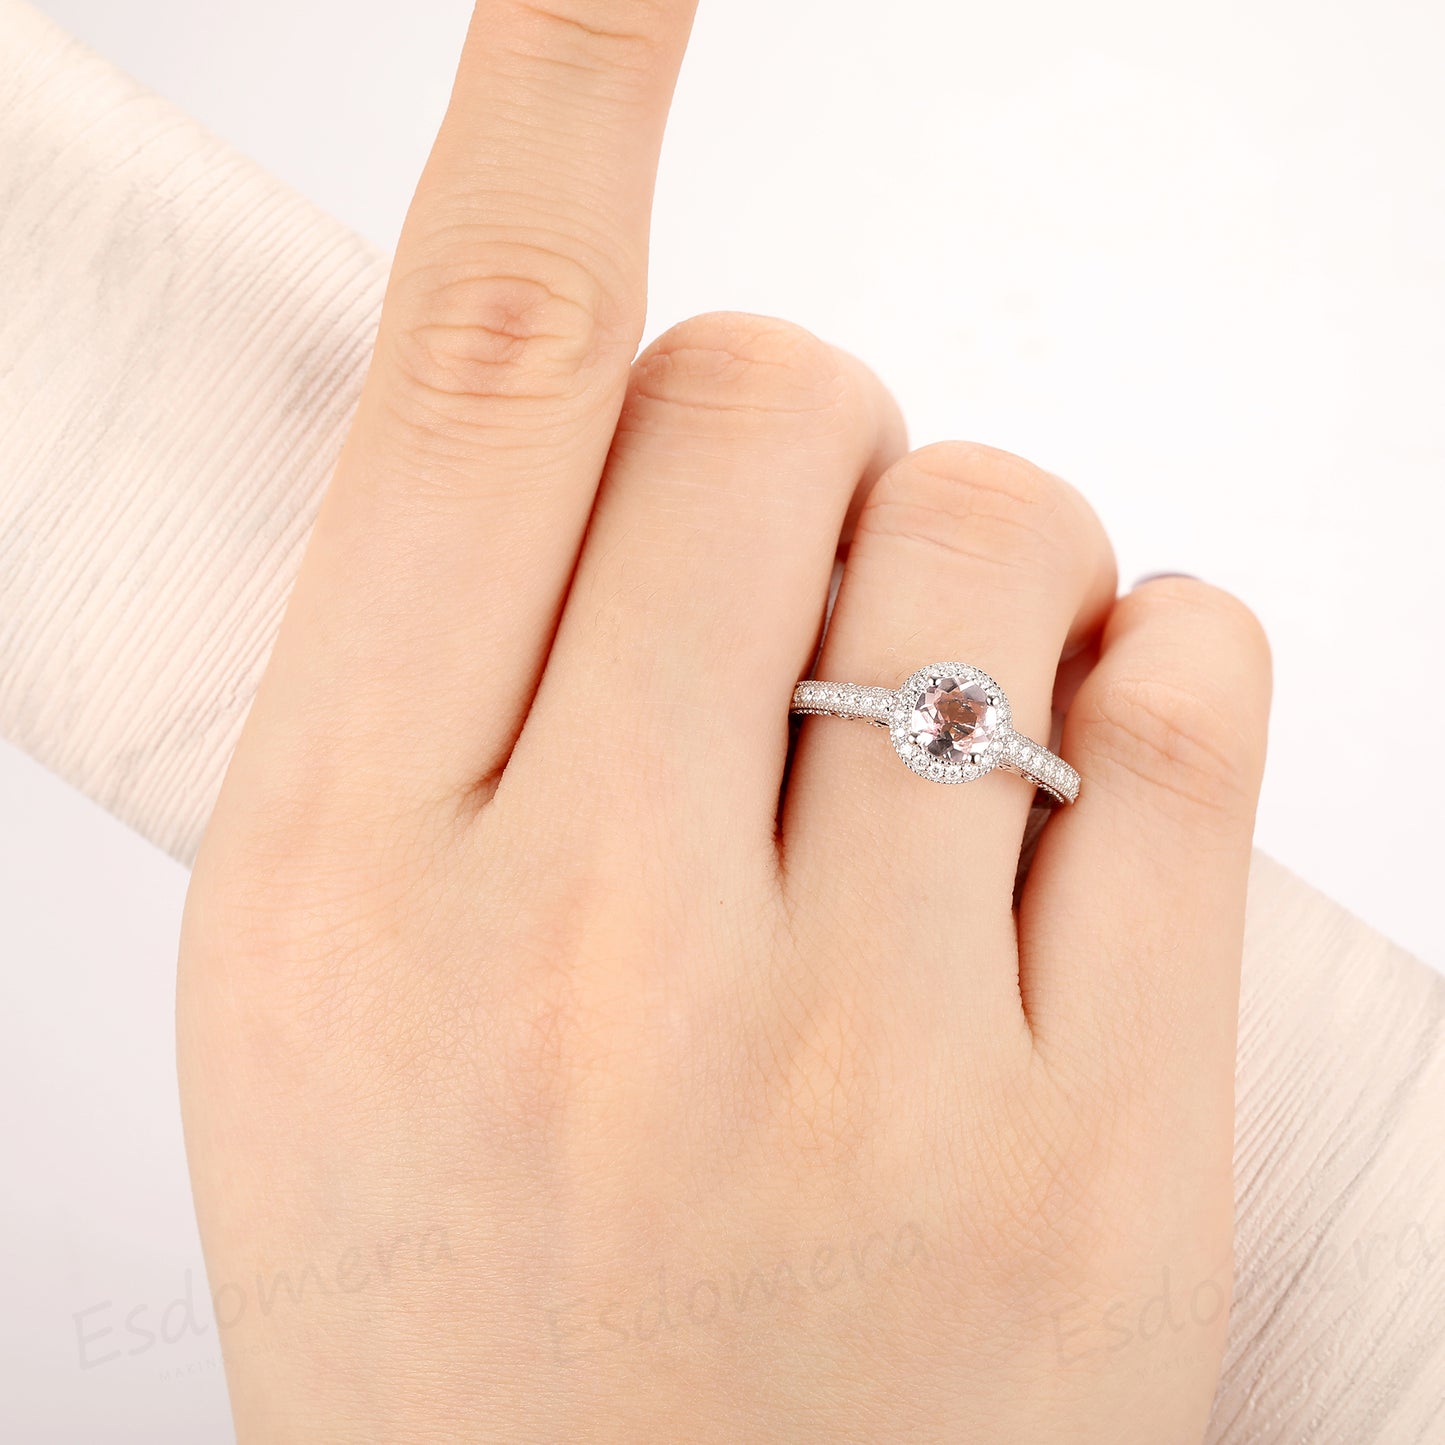 Vintage Filigree Round Cut 0.8CT Morganite Ring, Halo 14k White Gold Engagement Ring